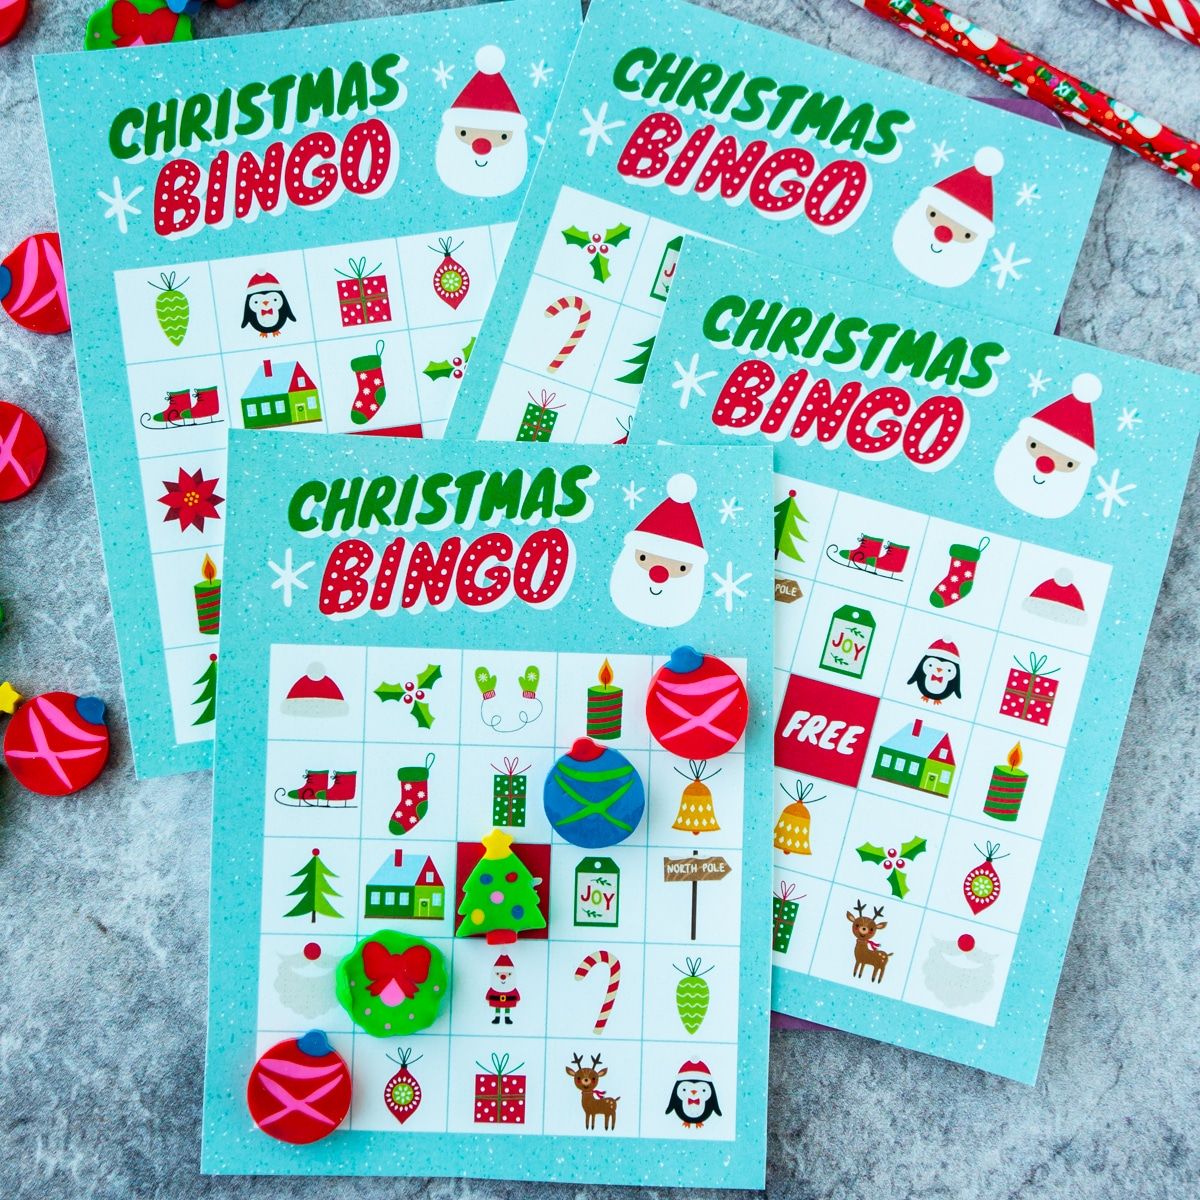 Čtyři vánoční bingo karty naskládané na sebe